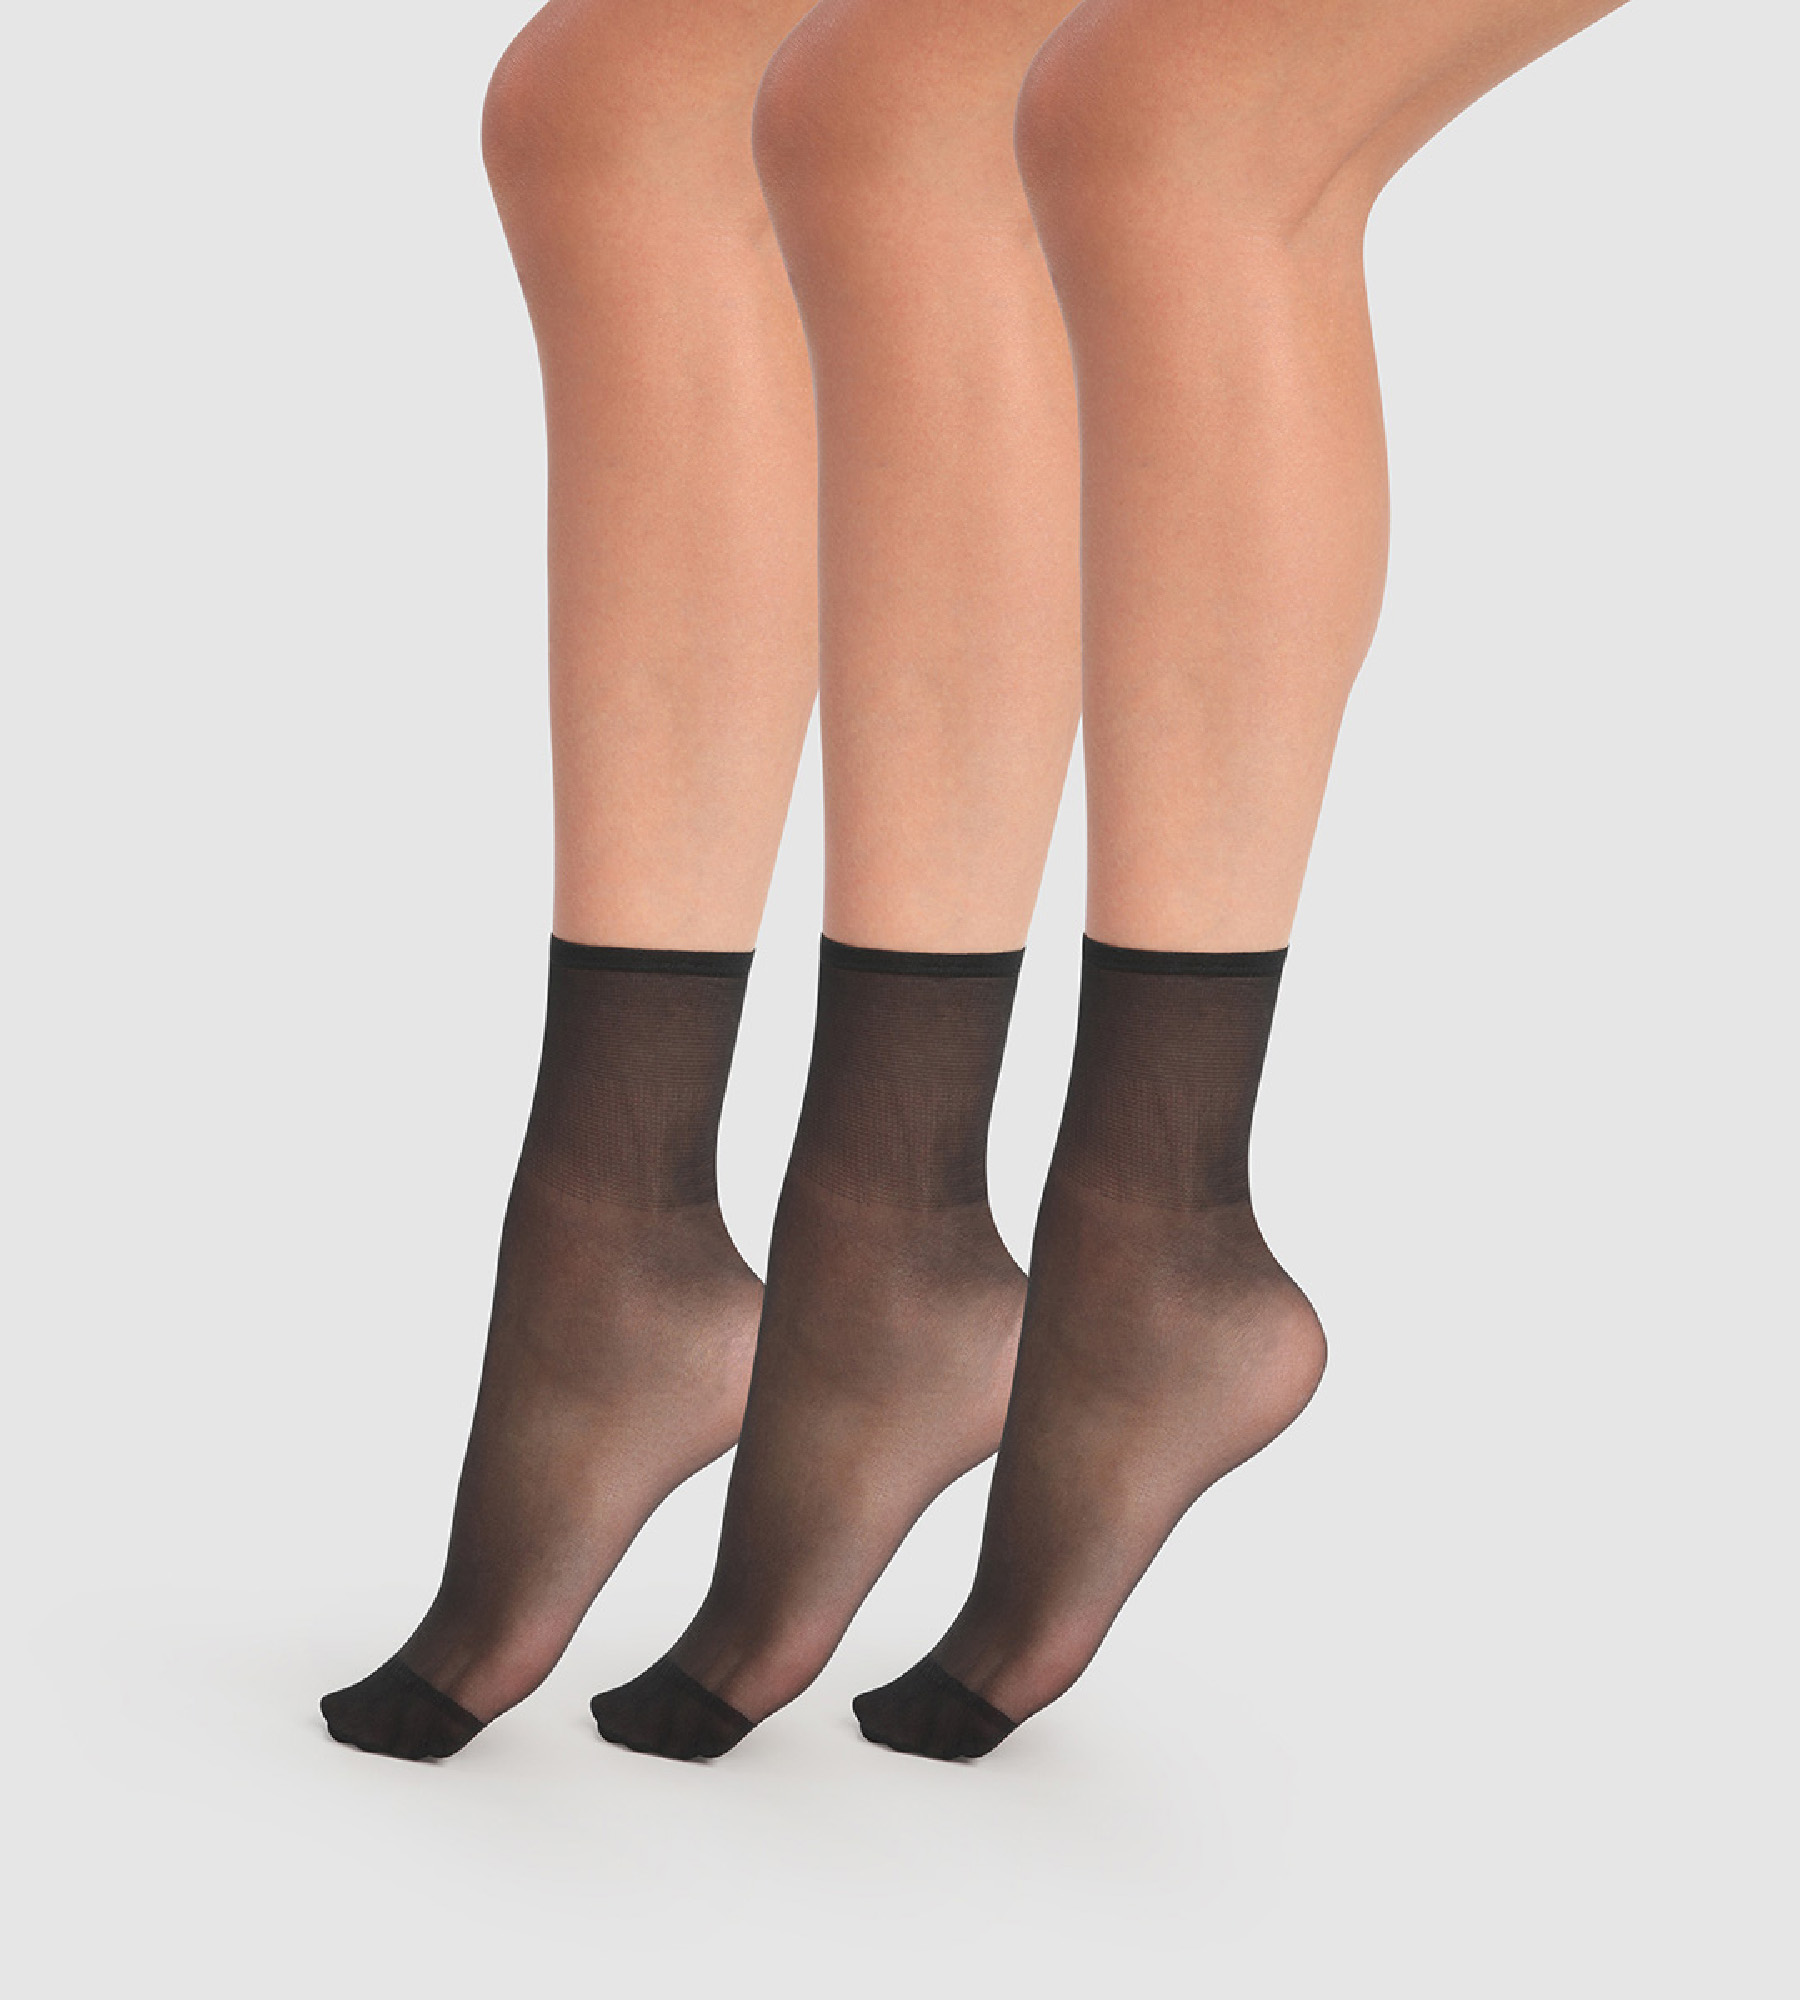 Lot de 2 paires de chaussettes Femme noires et détails pois - Dim Skin Fancy